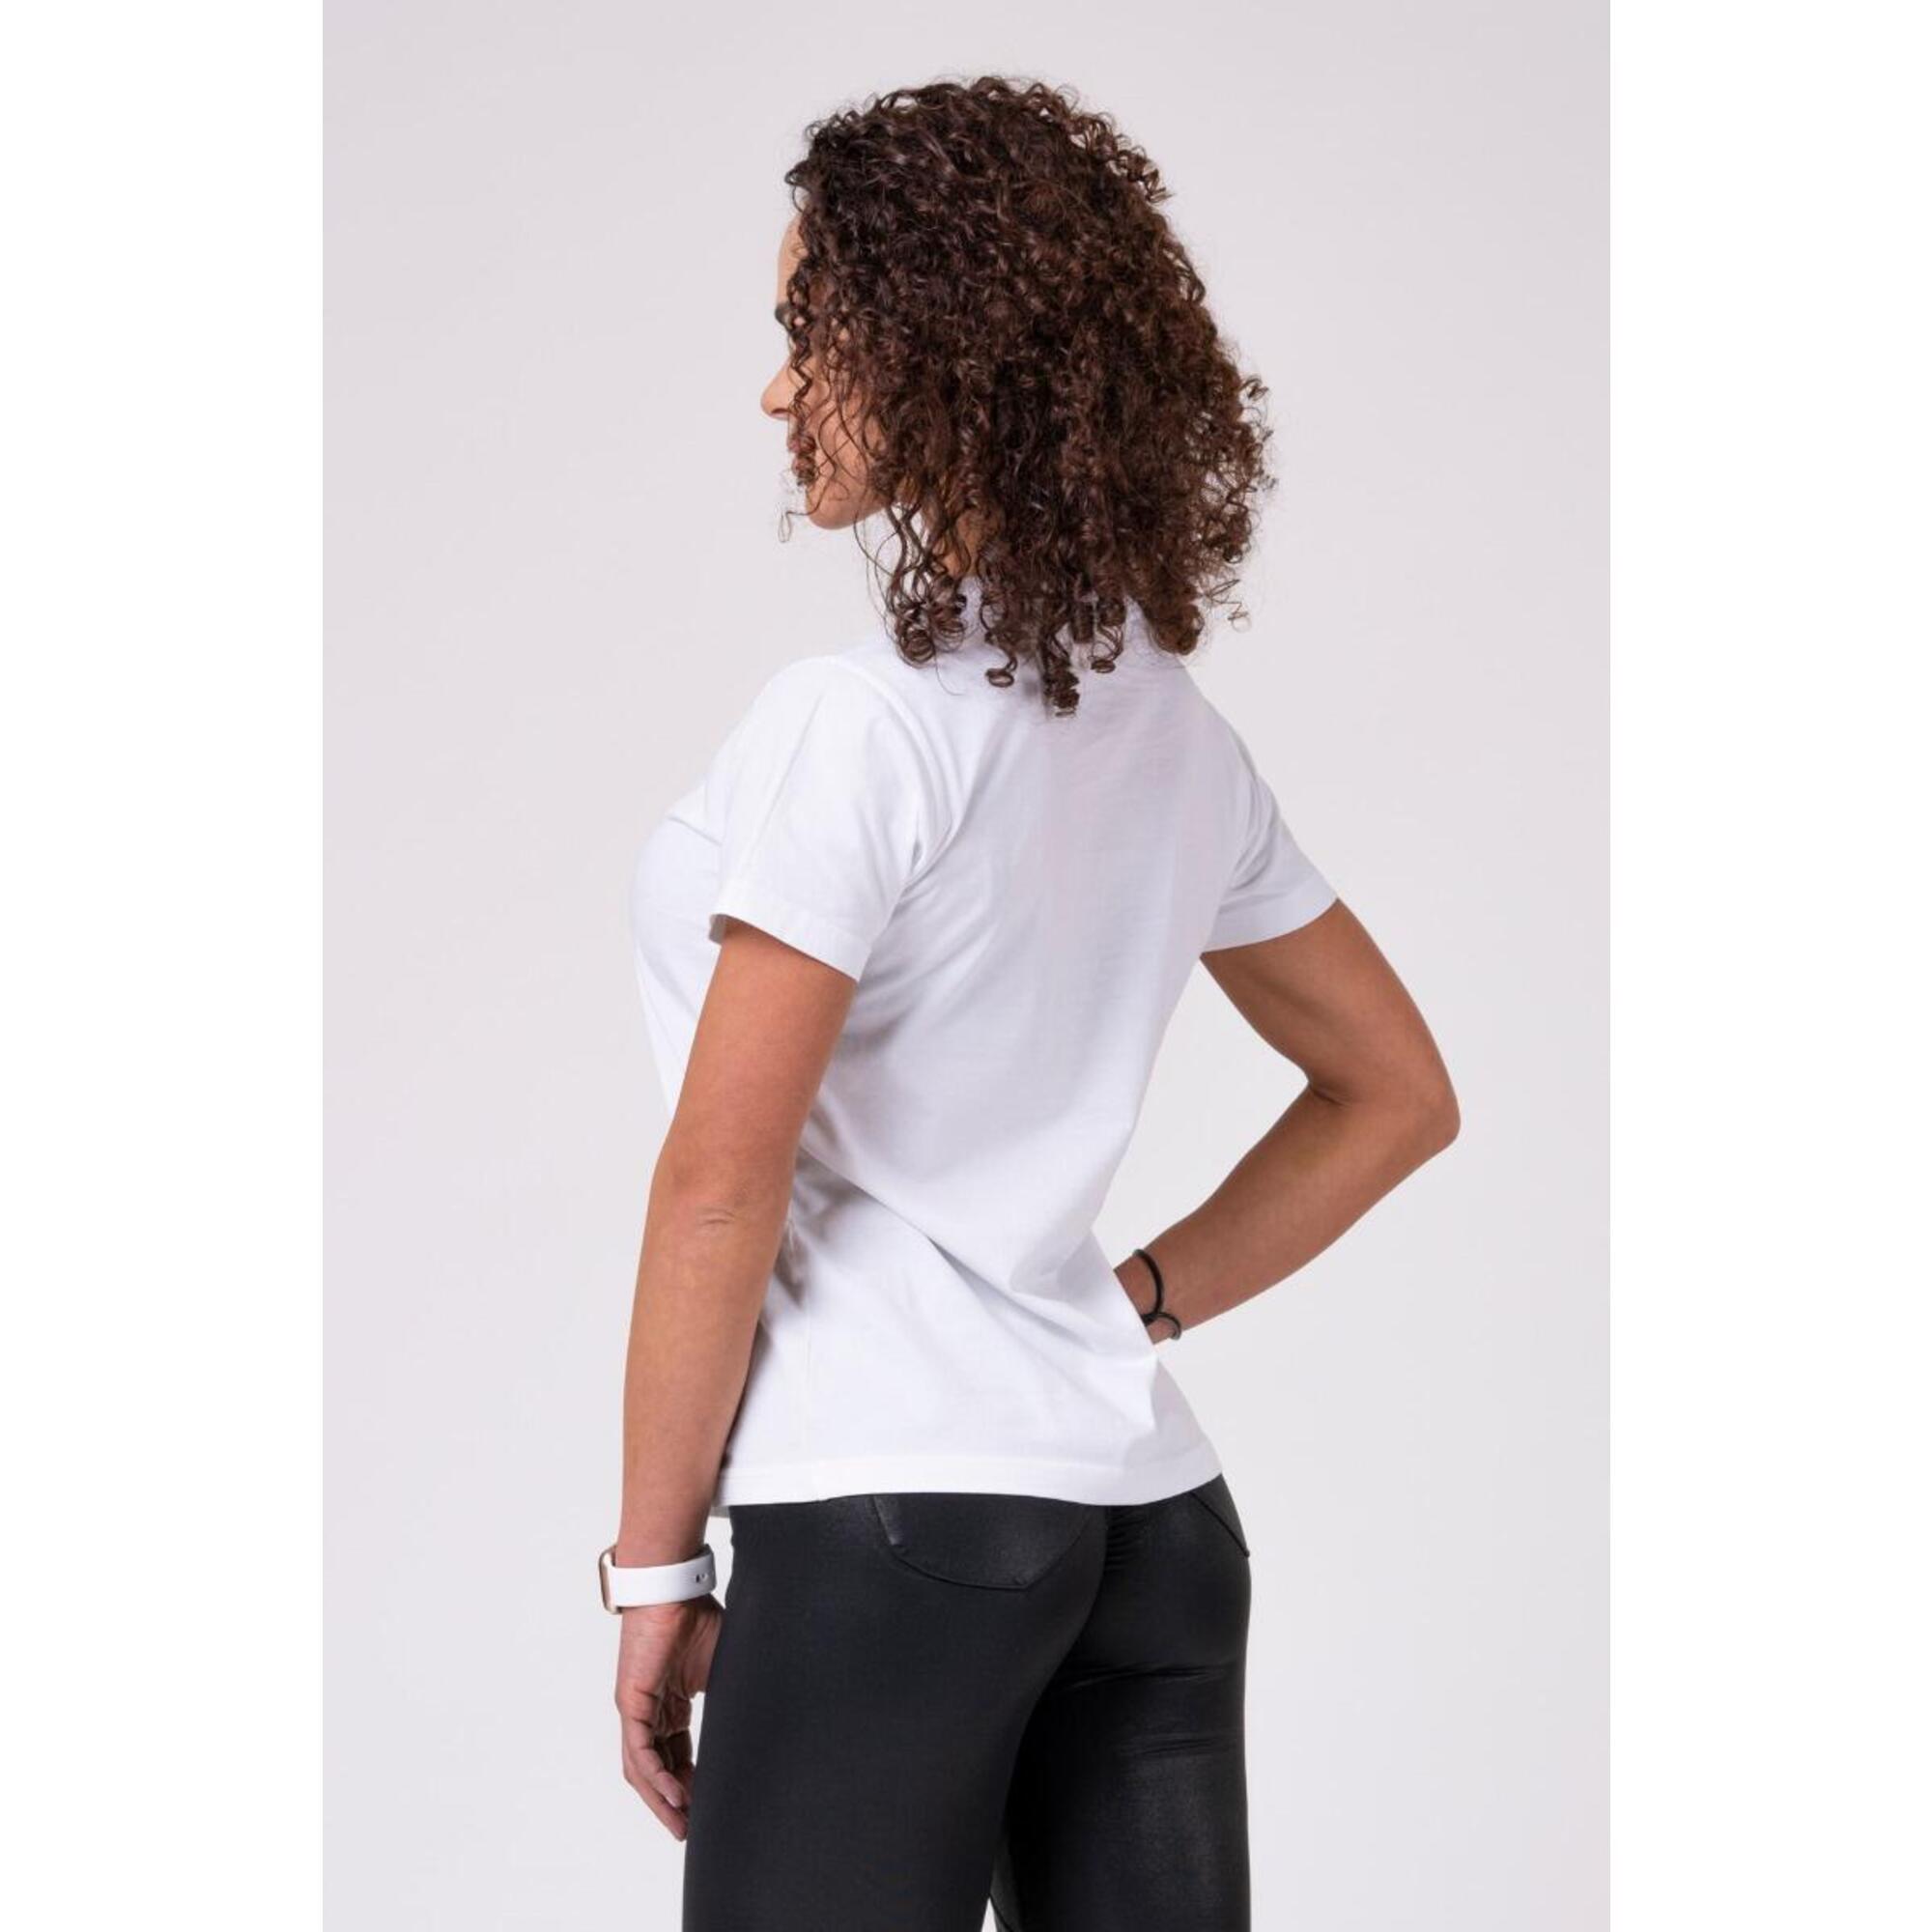 Koszulka fitness damska Nebbia Basic biała